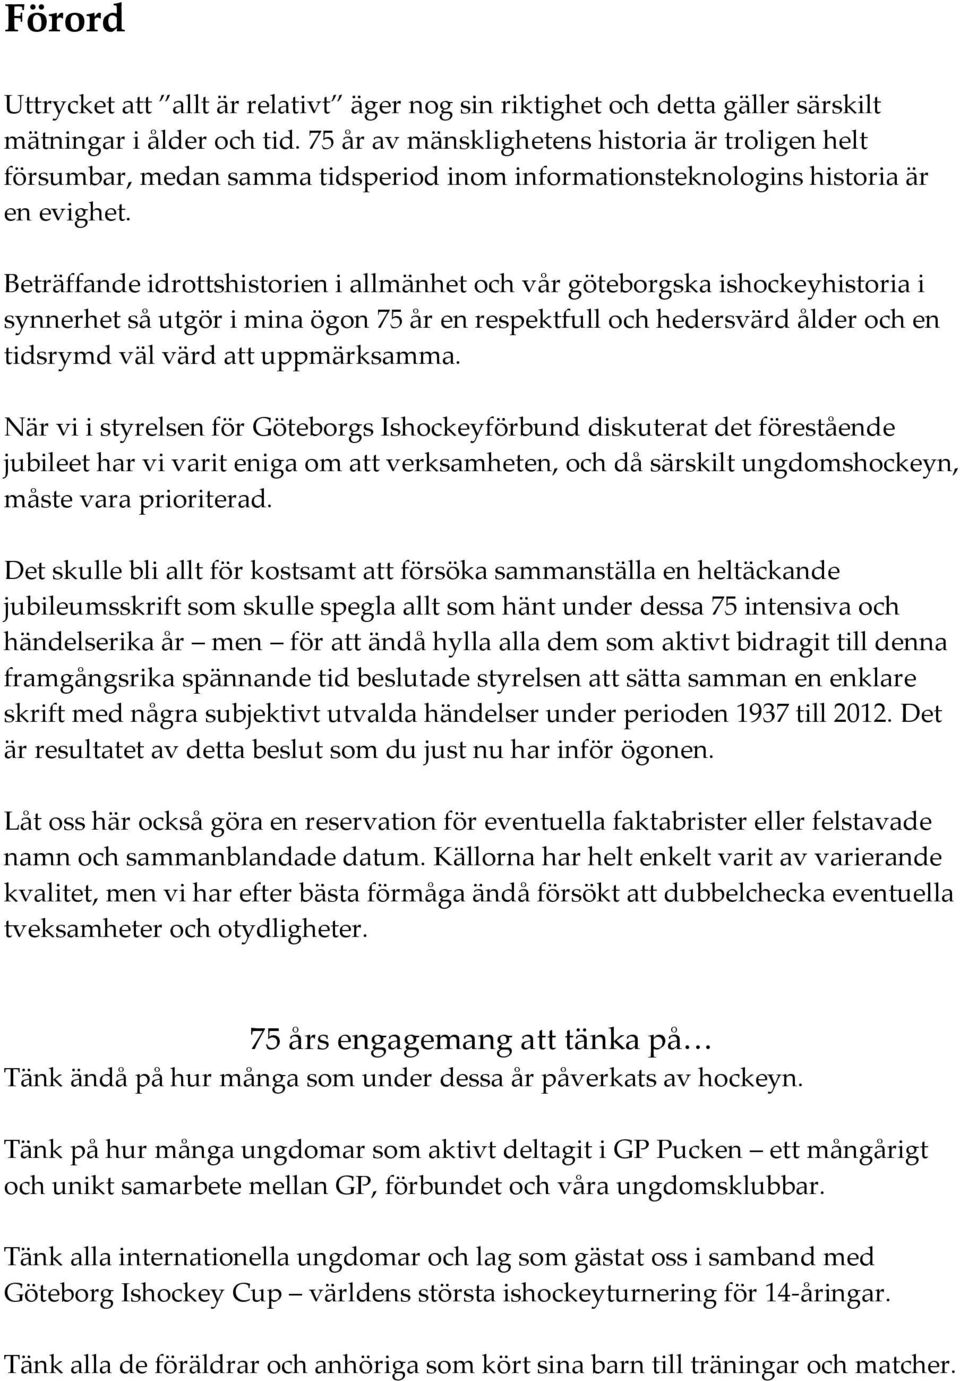 Beträffande idrottshistorien i allmänhet och vår göteborgska ishockeyhistoria i synnerhet så utgör i mina ögon 75 år en respektfull och hedersvärd ålder och en tidsrymd väl värd att uppmärksamma.